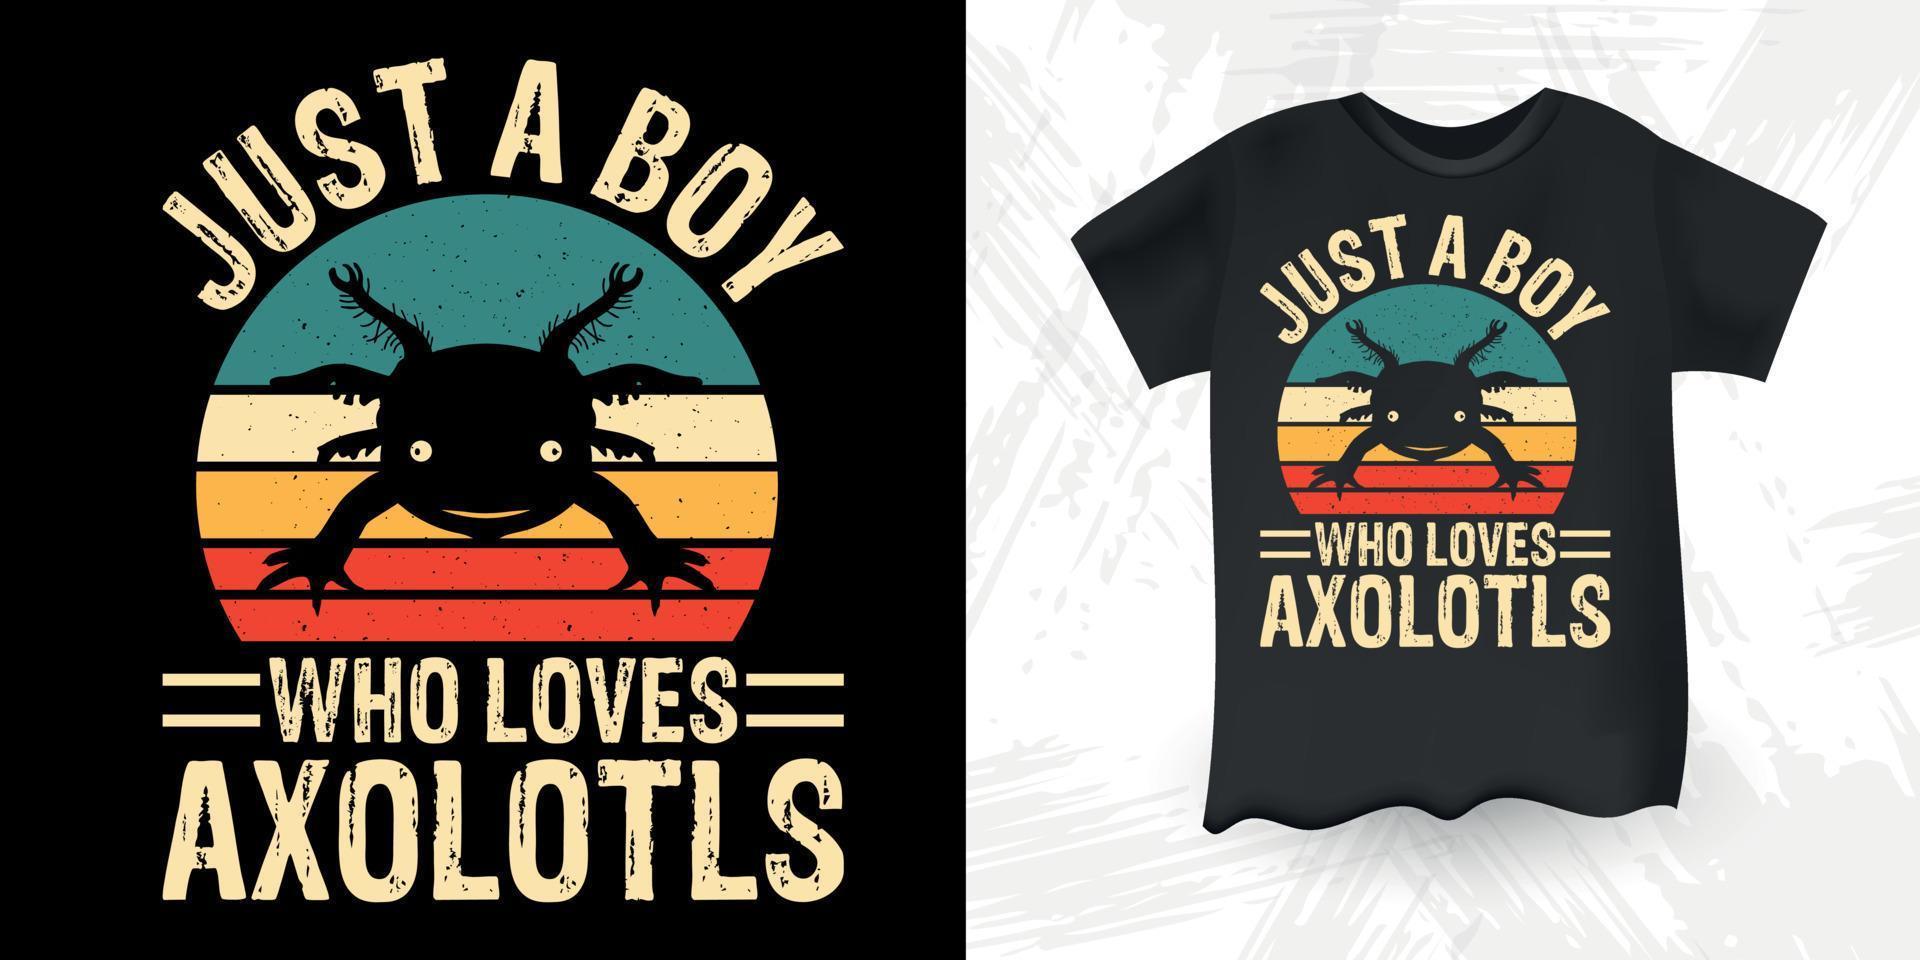 nur ein Junge, der Axolotls liebt lustiger niedlicher Axolotl retro Vintager Axolotl-T-Shirt Entwurf vektor